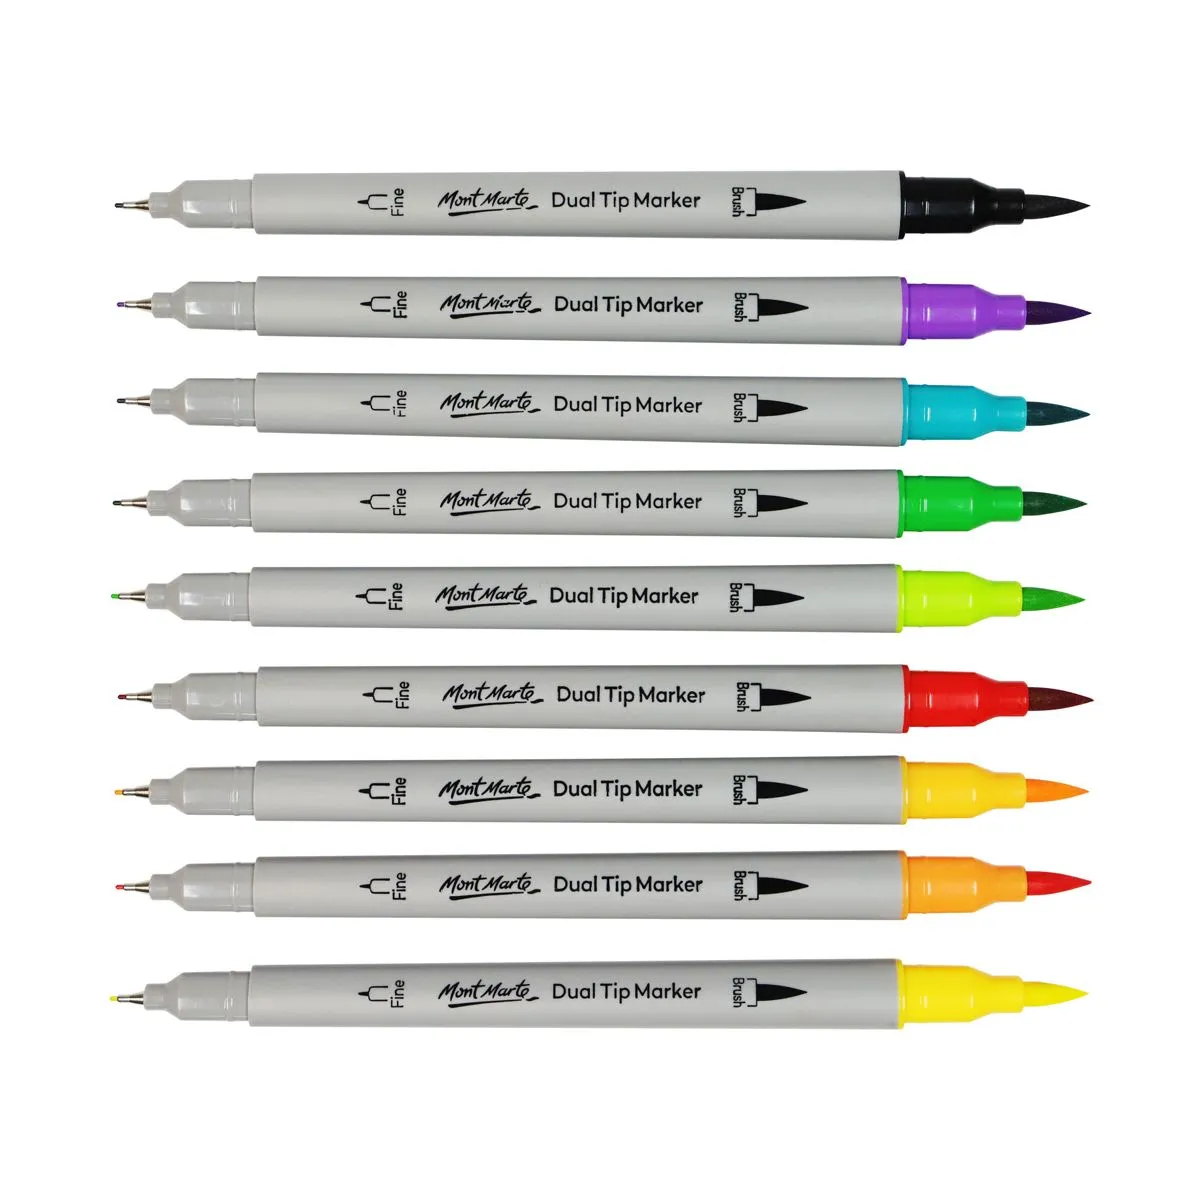 Marcadores Profesionales Markers X60 Colores Doble Punta